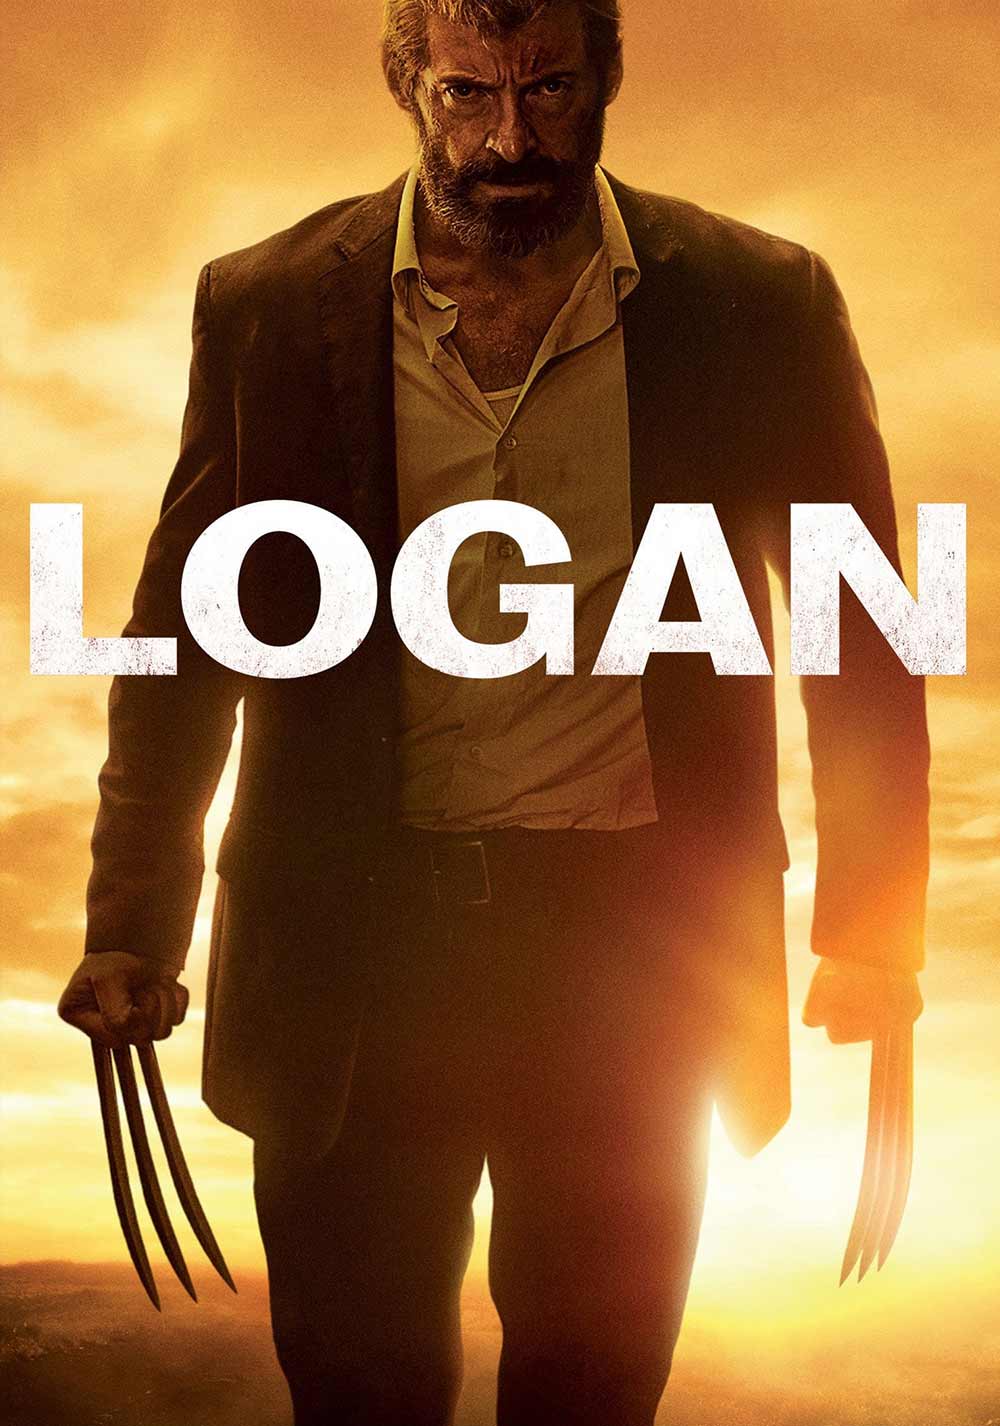 Logan – IMDb 8.1